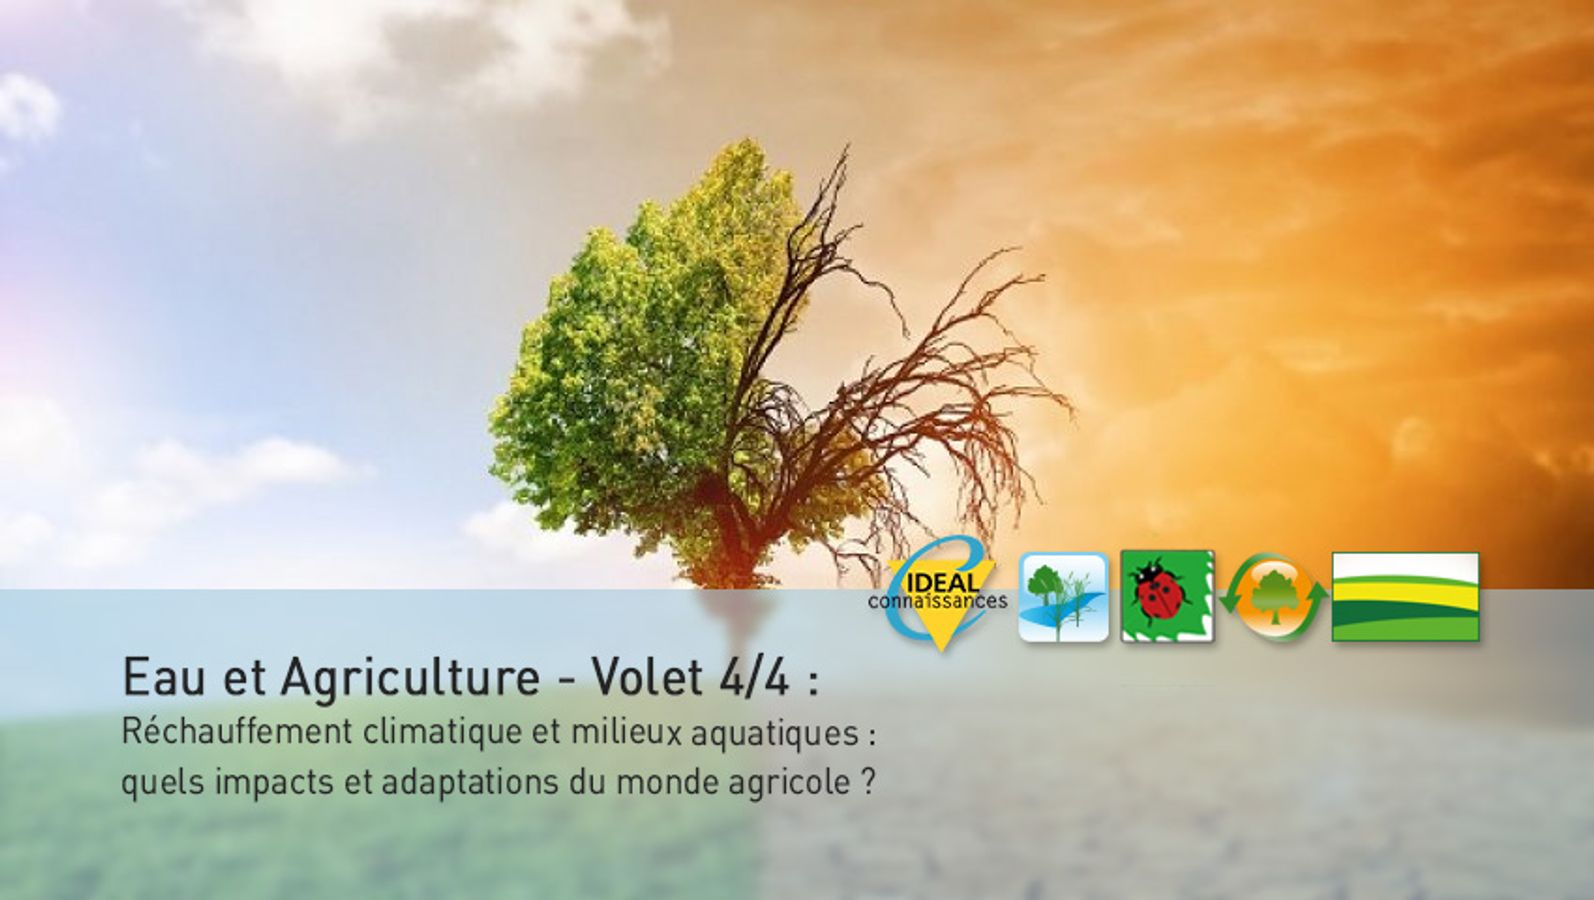 Eau et Agriculture - Volet 4/4 : Réchauffement climatique et milieux aquatiques : quels impacts et adaptations du monde agricole ?